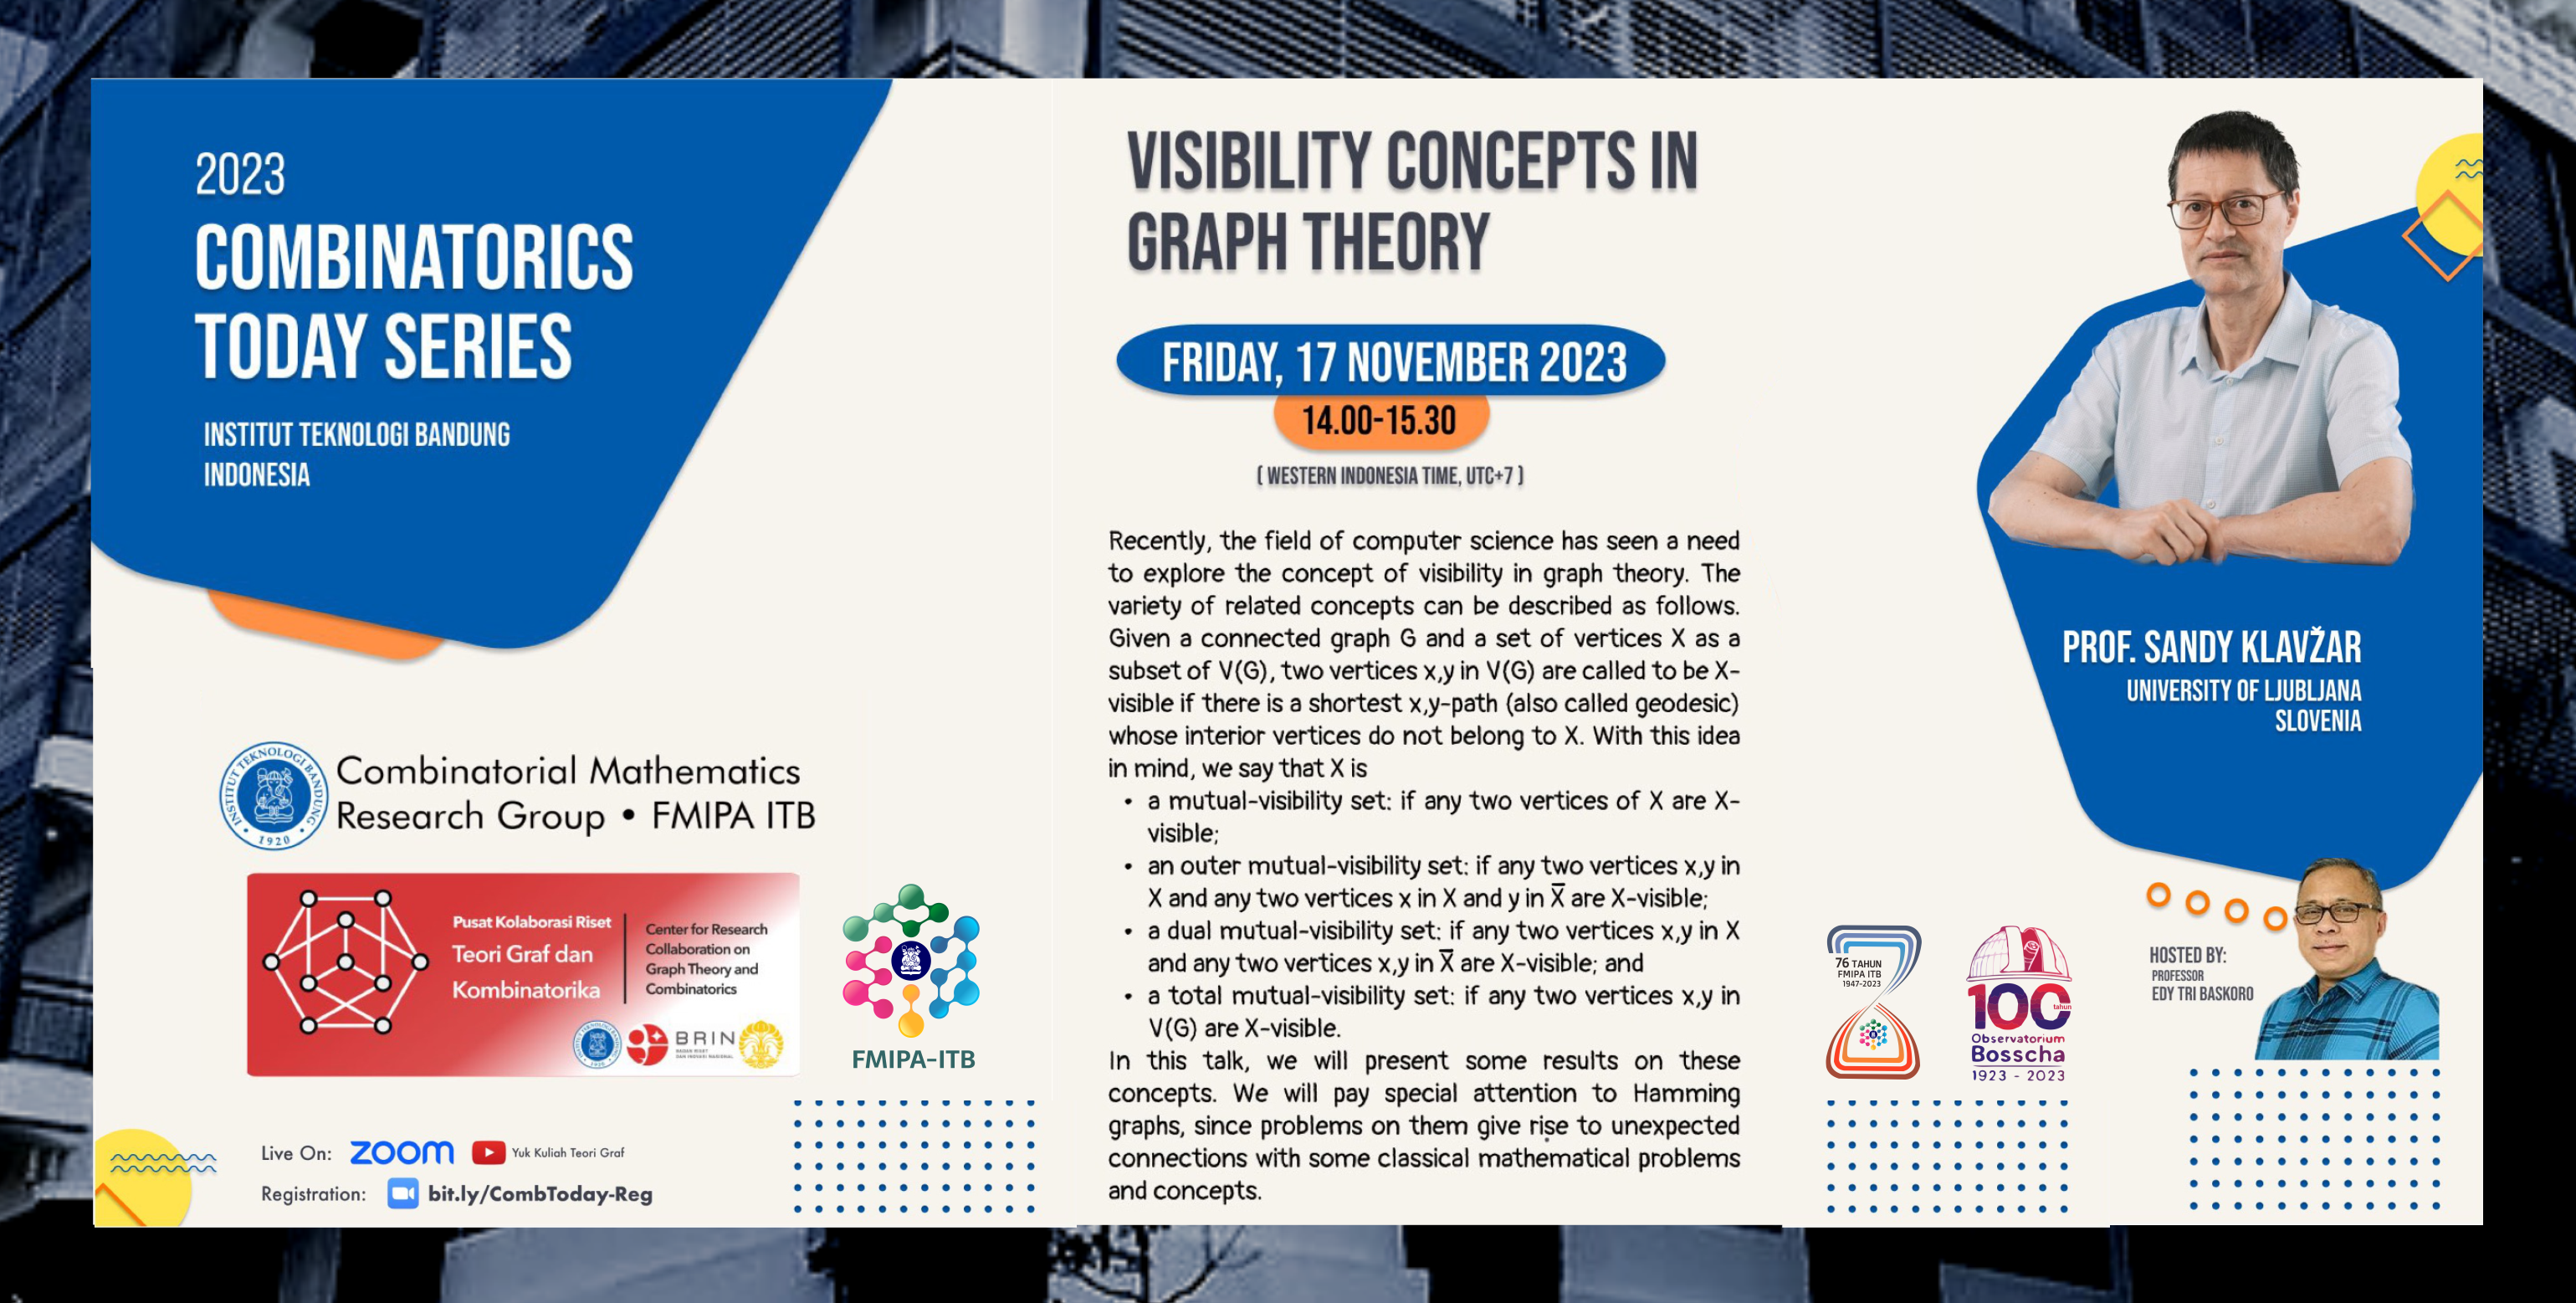 Prof. Sandi Klavzar bicara tentang konsep visibility pada Teori graf di CTS FMIPA ITB